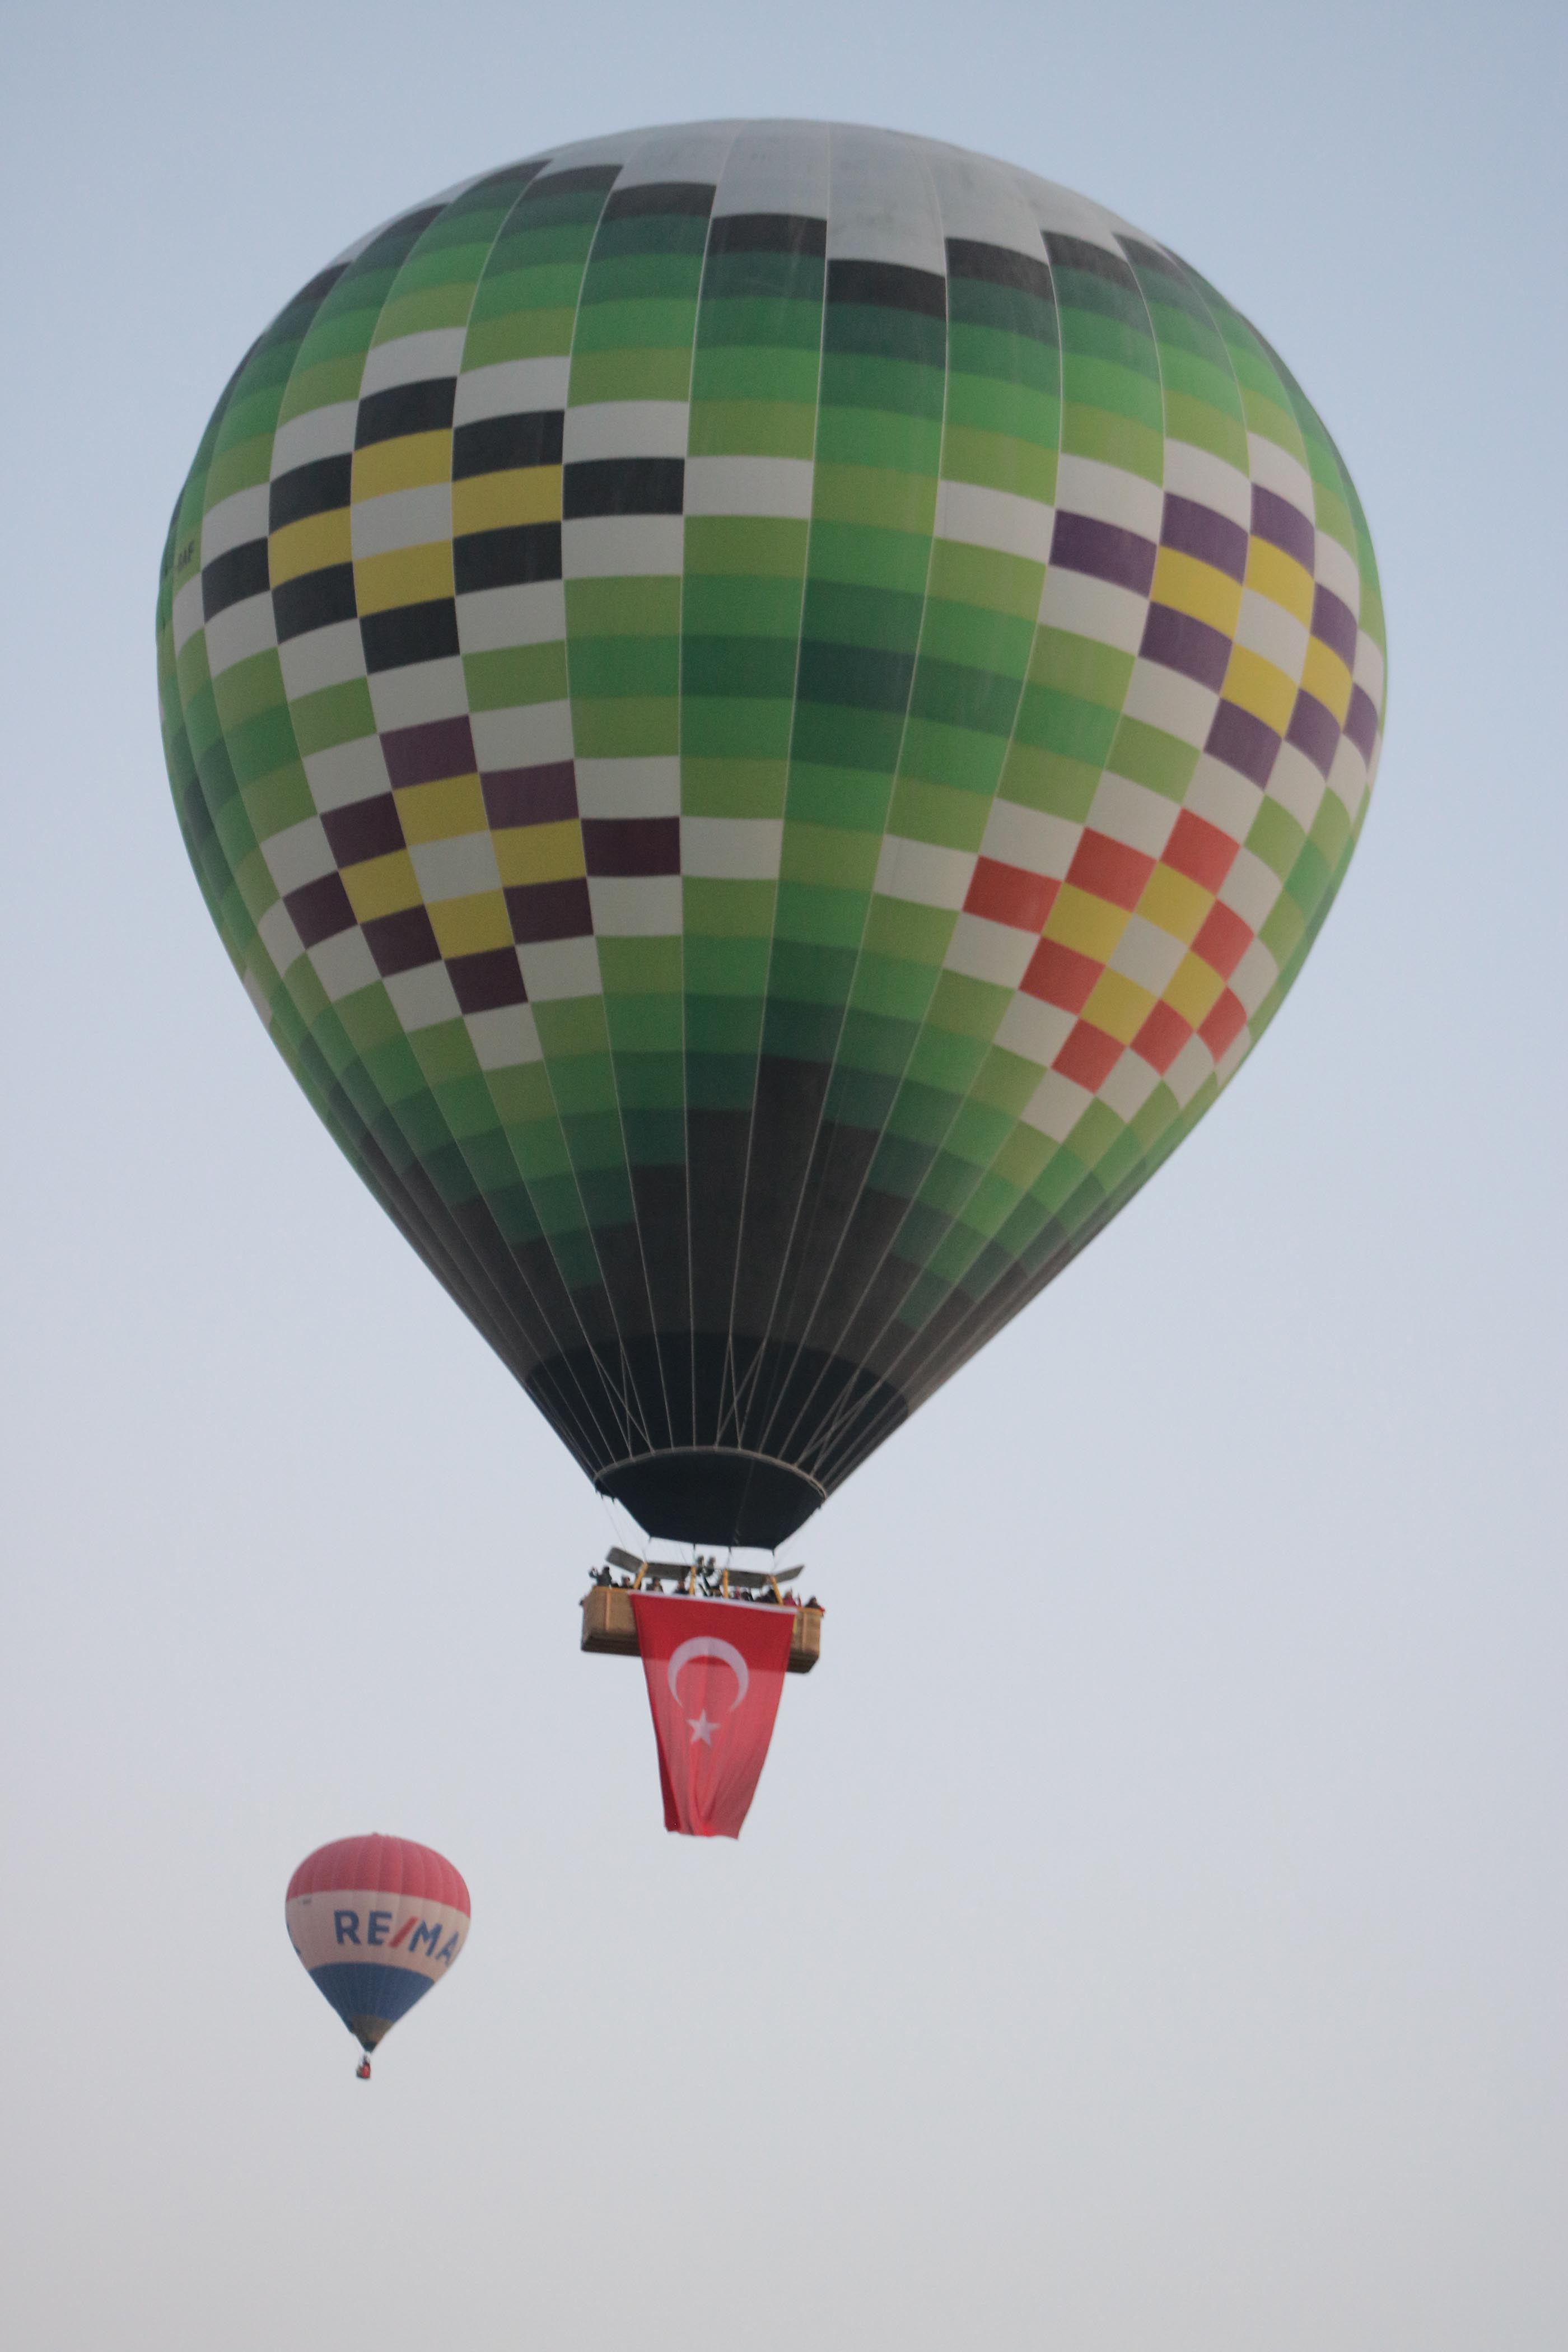 sicak-hava-balonlari-ataturk-posterleri-ve-turk-bayraklariyla-havalandi-3415-dhaphoto1.jpg